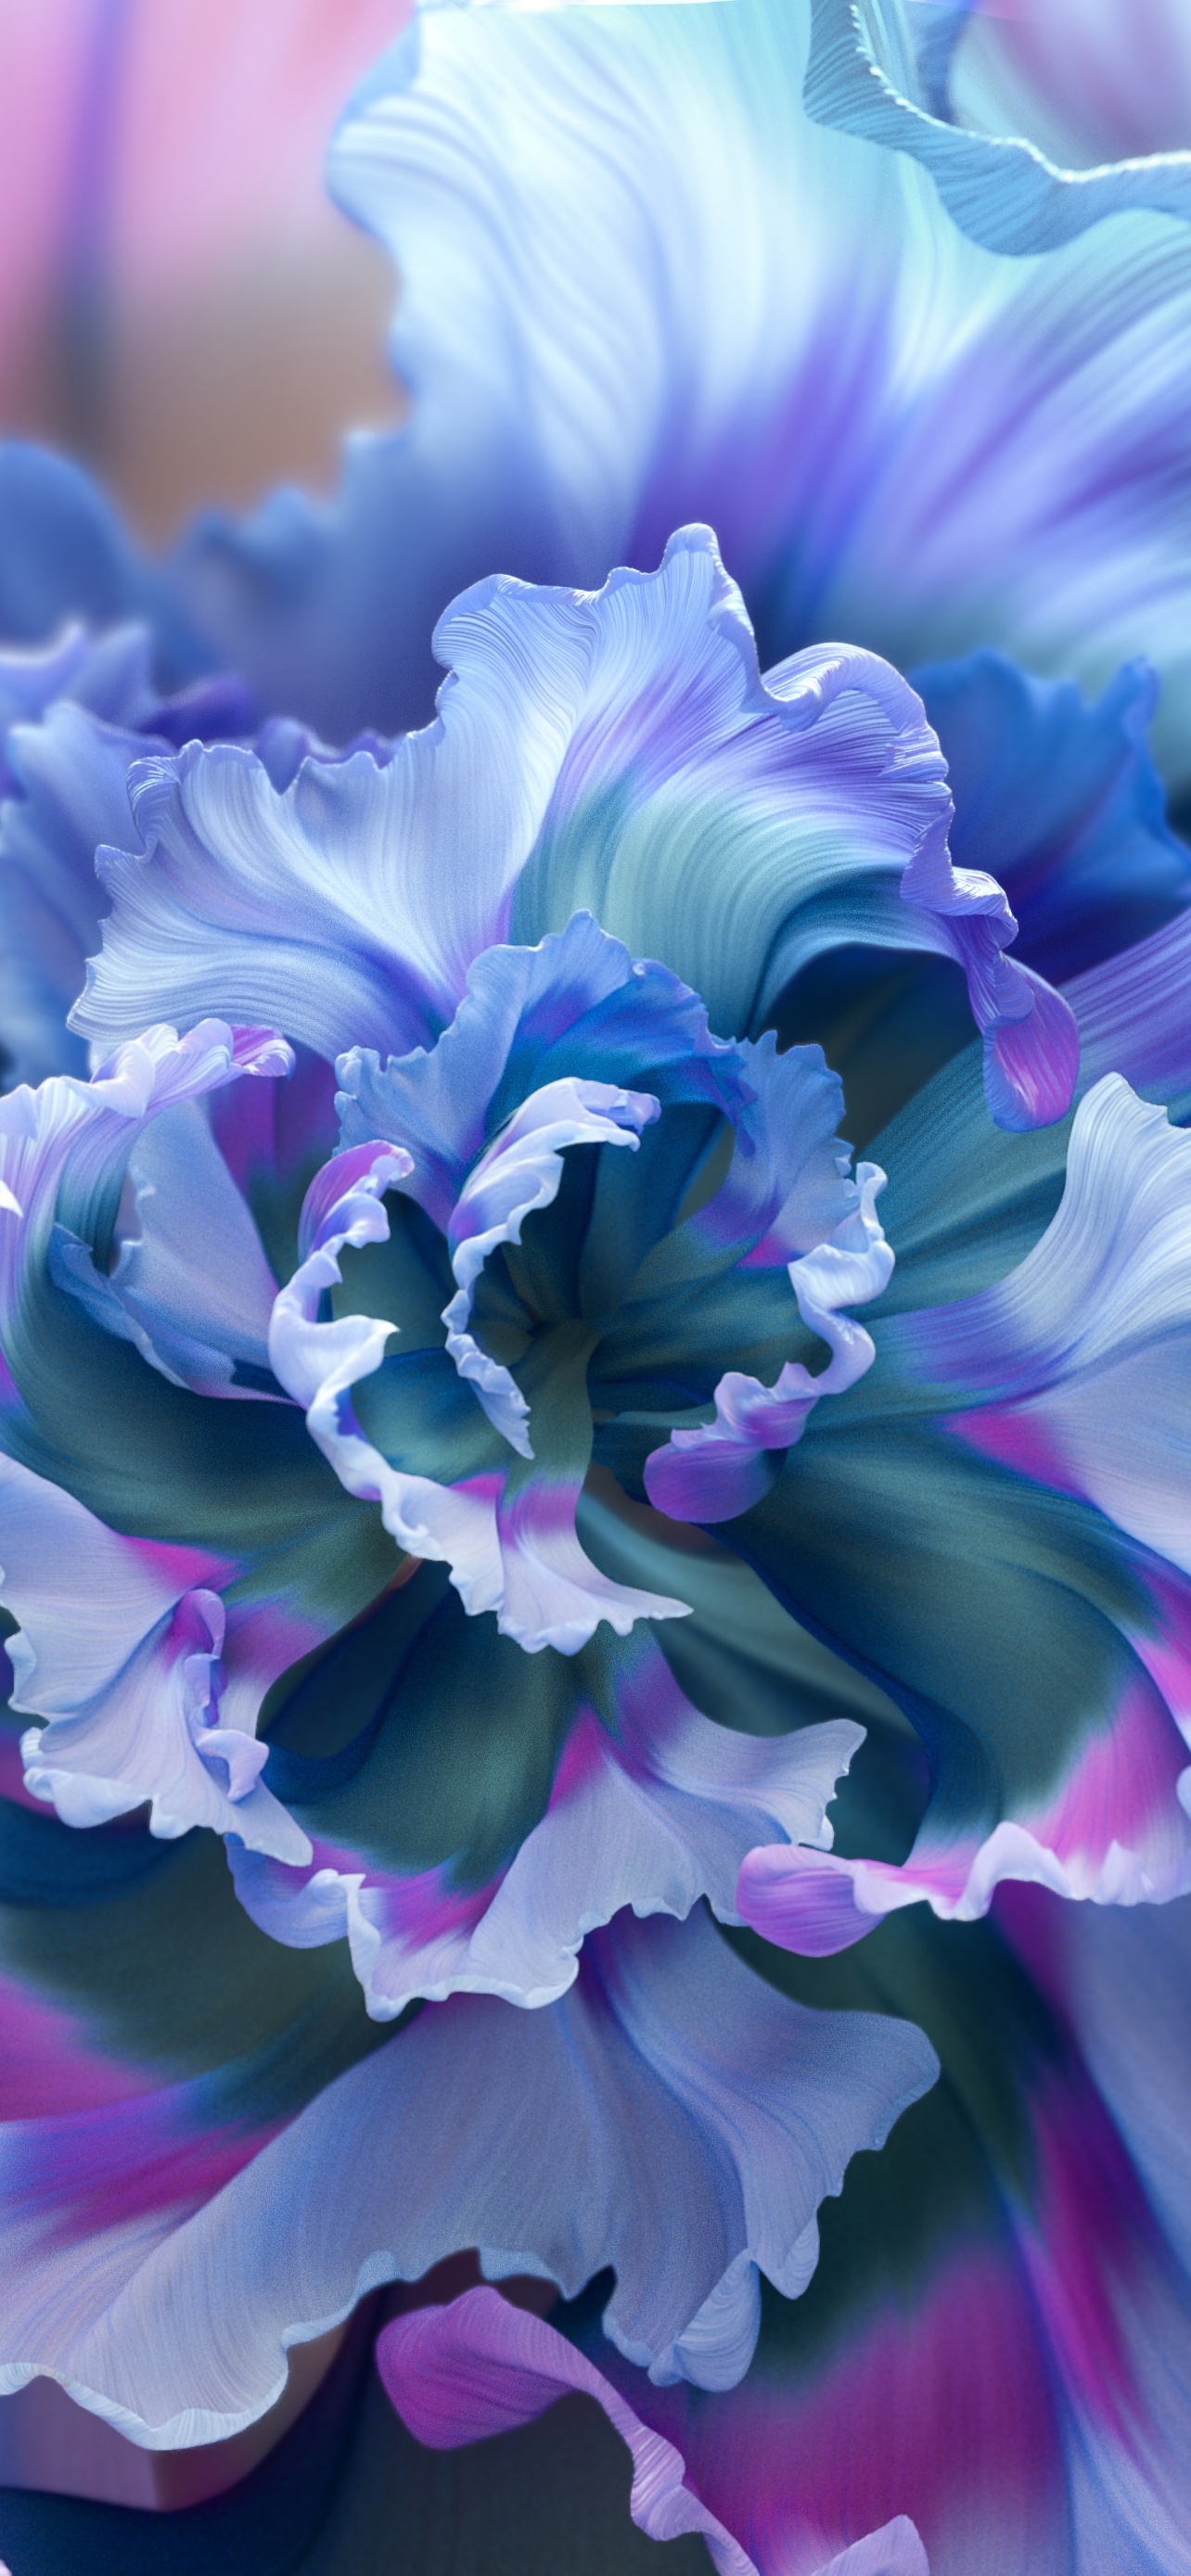 Hãy khám phá màu sắc và vẻ đẹp của những bông hoa tím trên chiếc điện thoại của bạn với hình nền hoa tím 4K nền hoa đa sắc đẹp mắt. Những tông màu sáng lấp lánh sẽ giúp bạn thư giãn và tạo cảm hứng cho ngày mới.